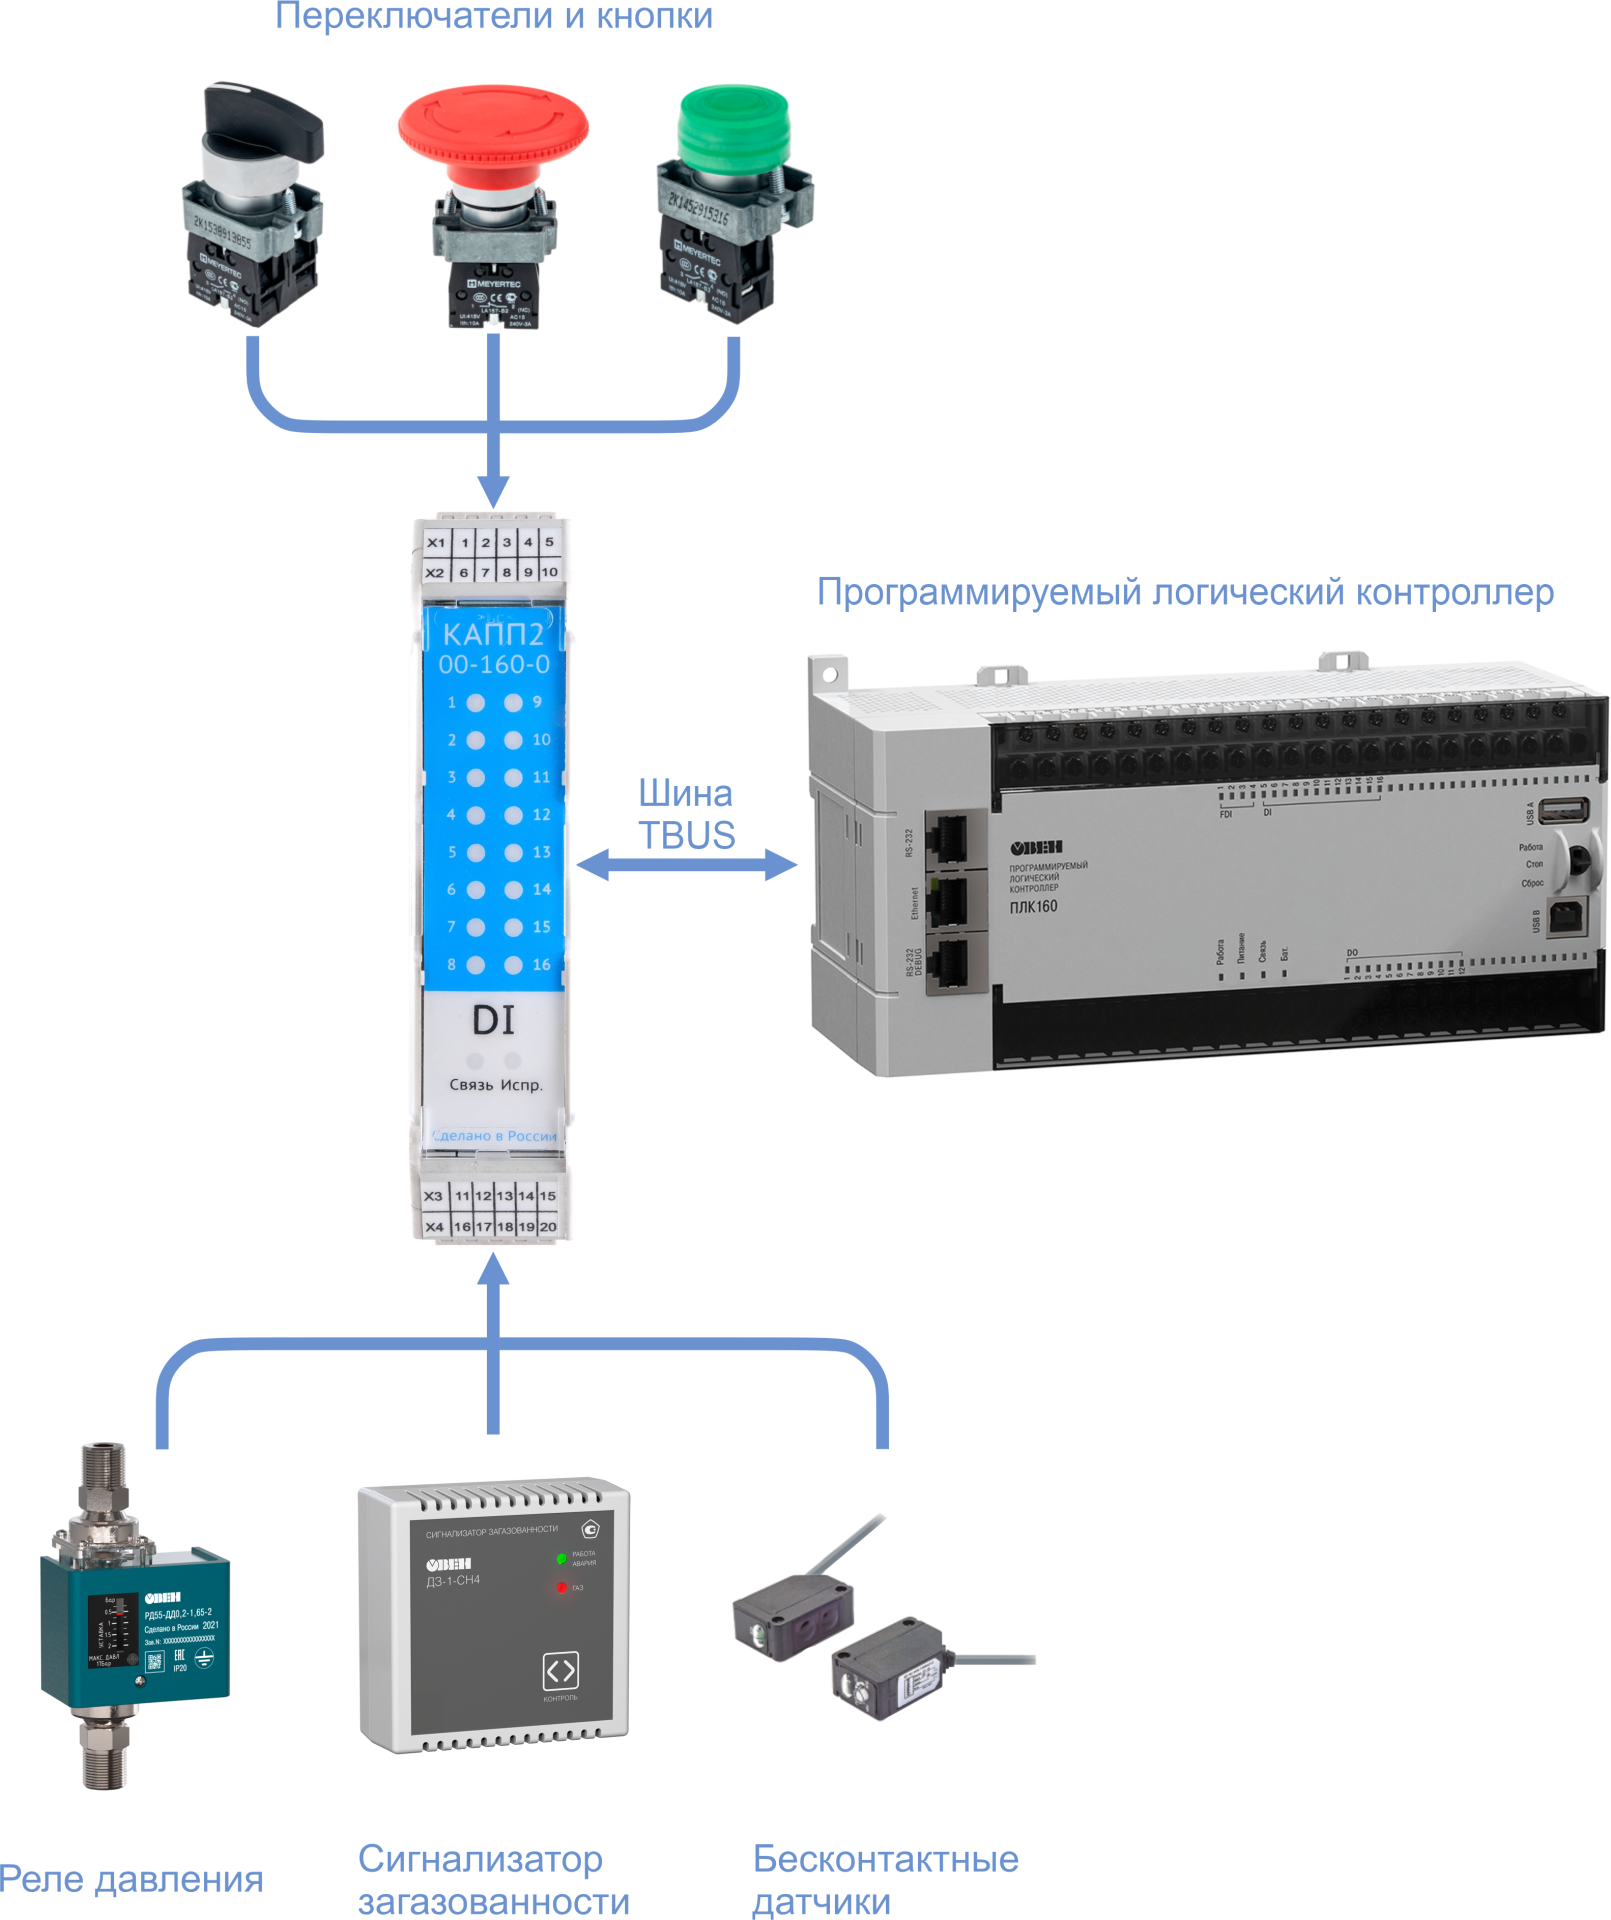 Подключение сигнализаторов и исполнительных механизмов к модулю КАПП2-00-160-0